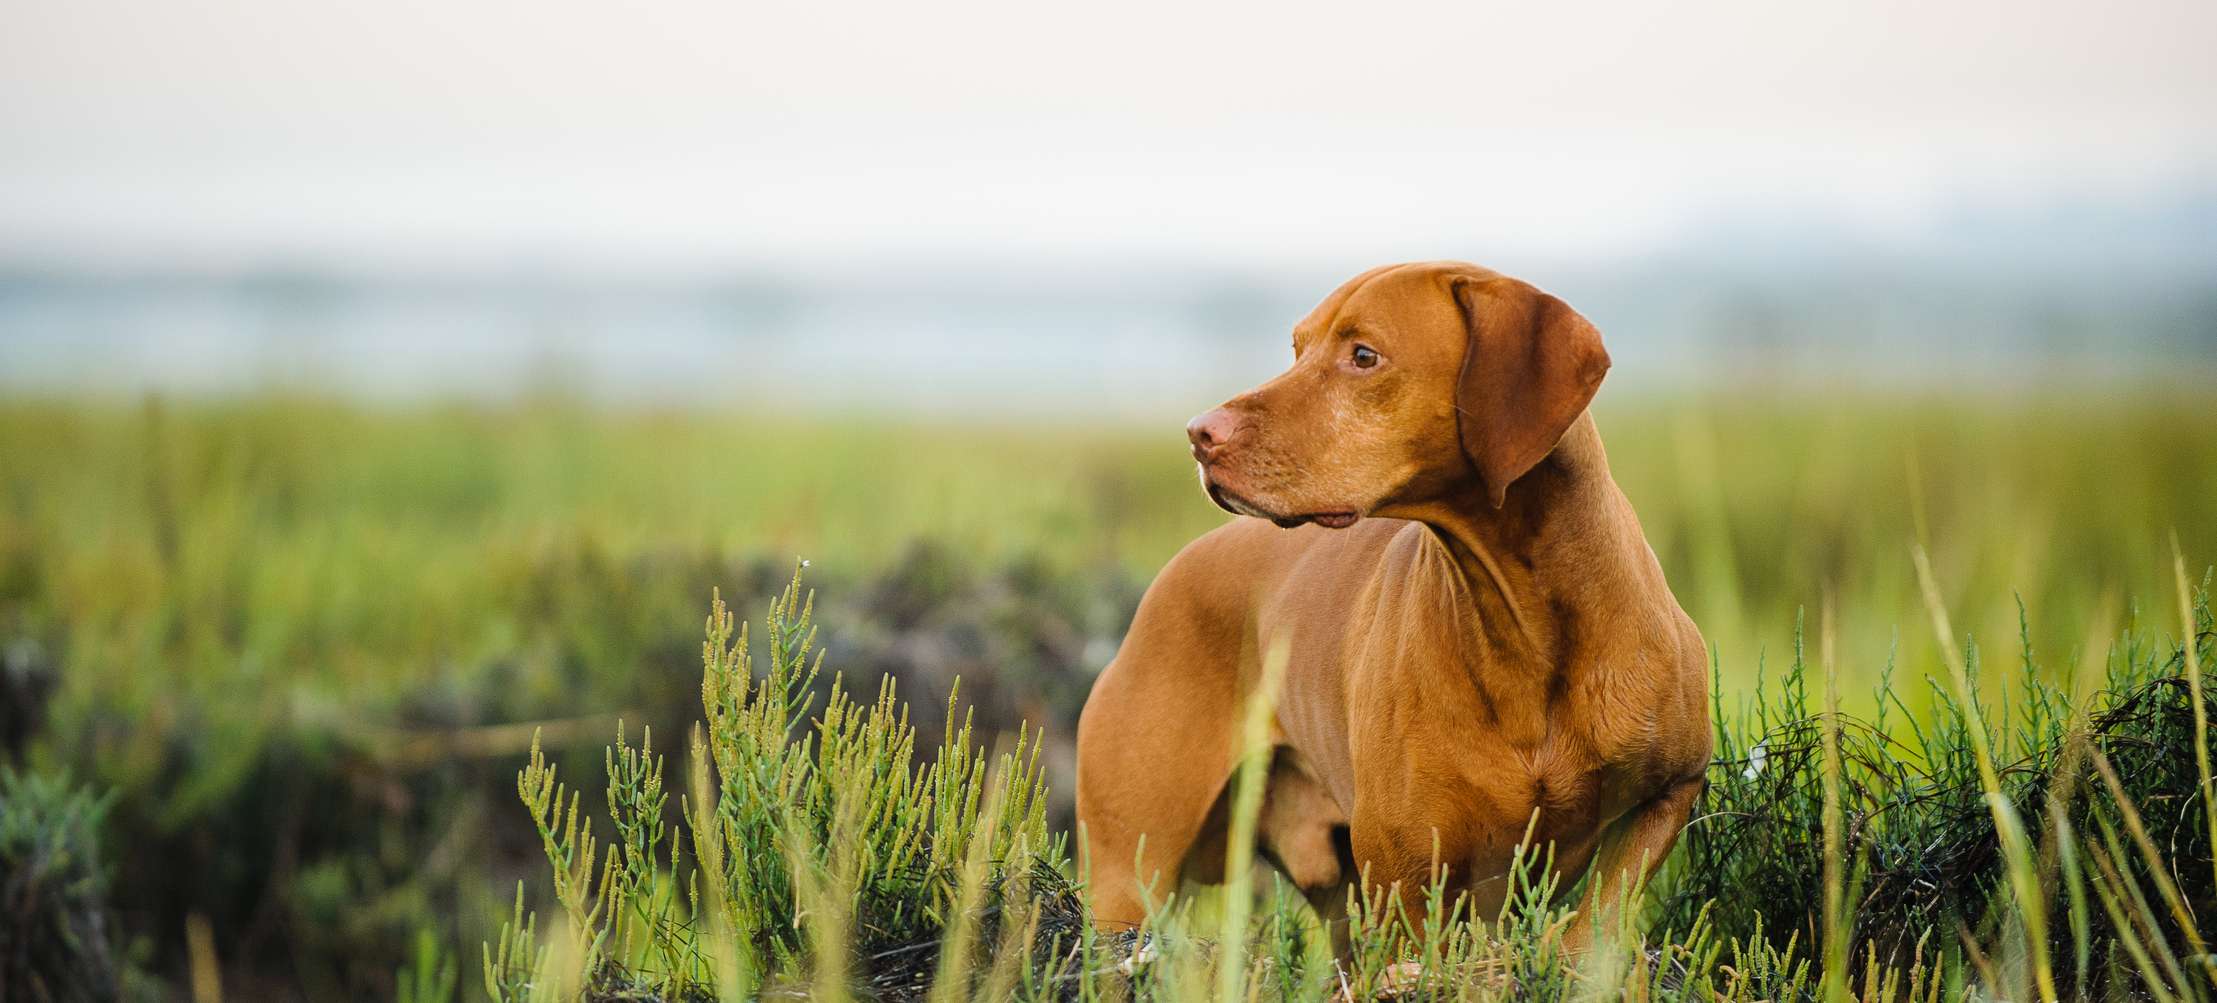 Allianz - Hund Tollwutimpfung: Jagdhund im Feld